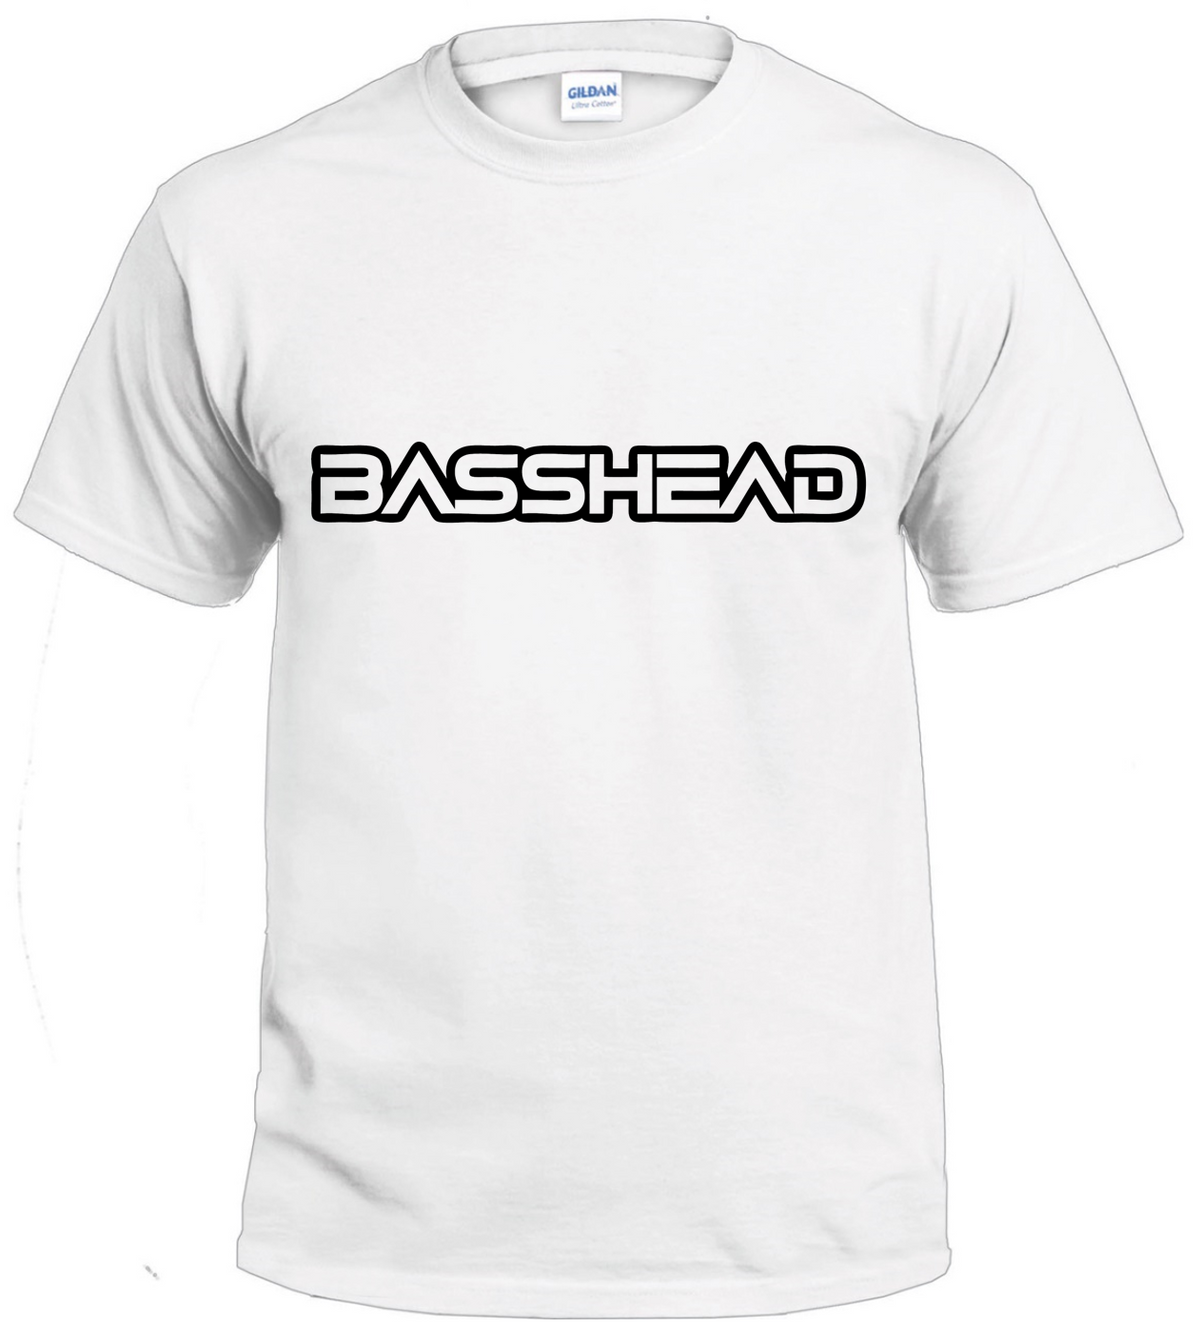 Basshead tshirt 2